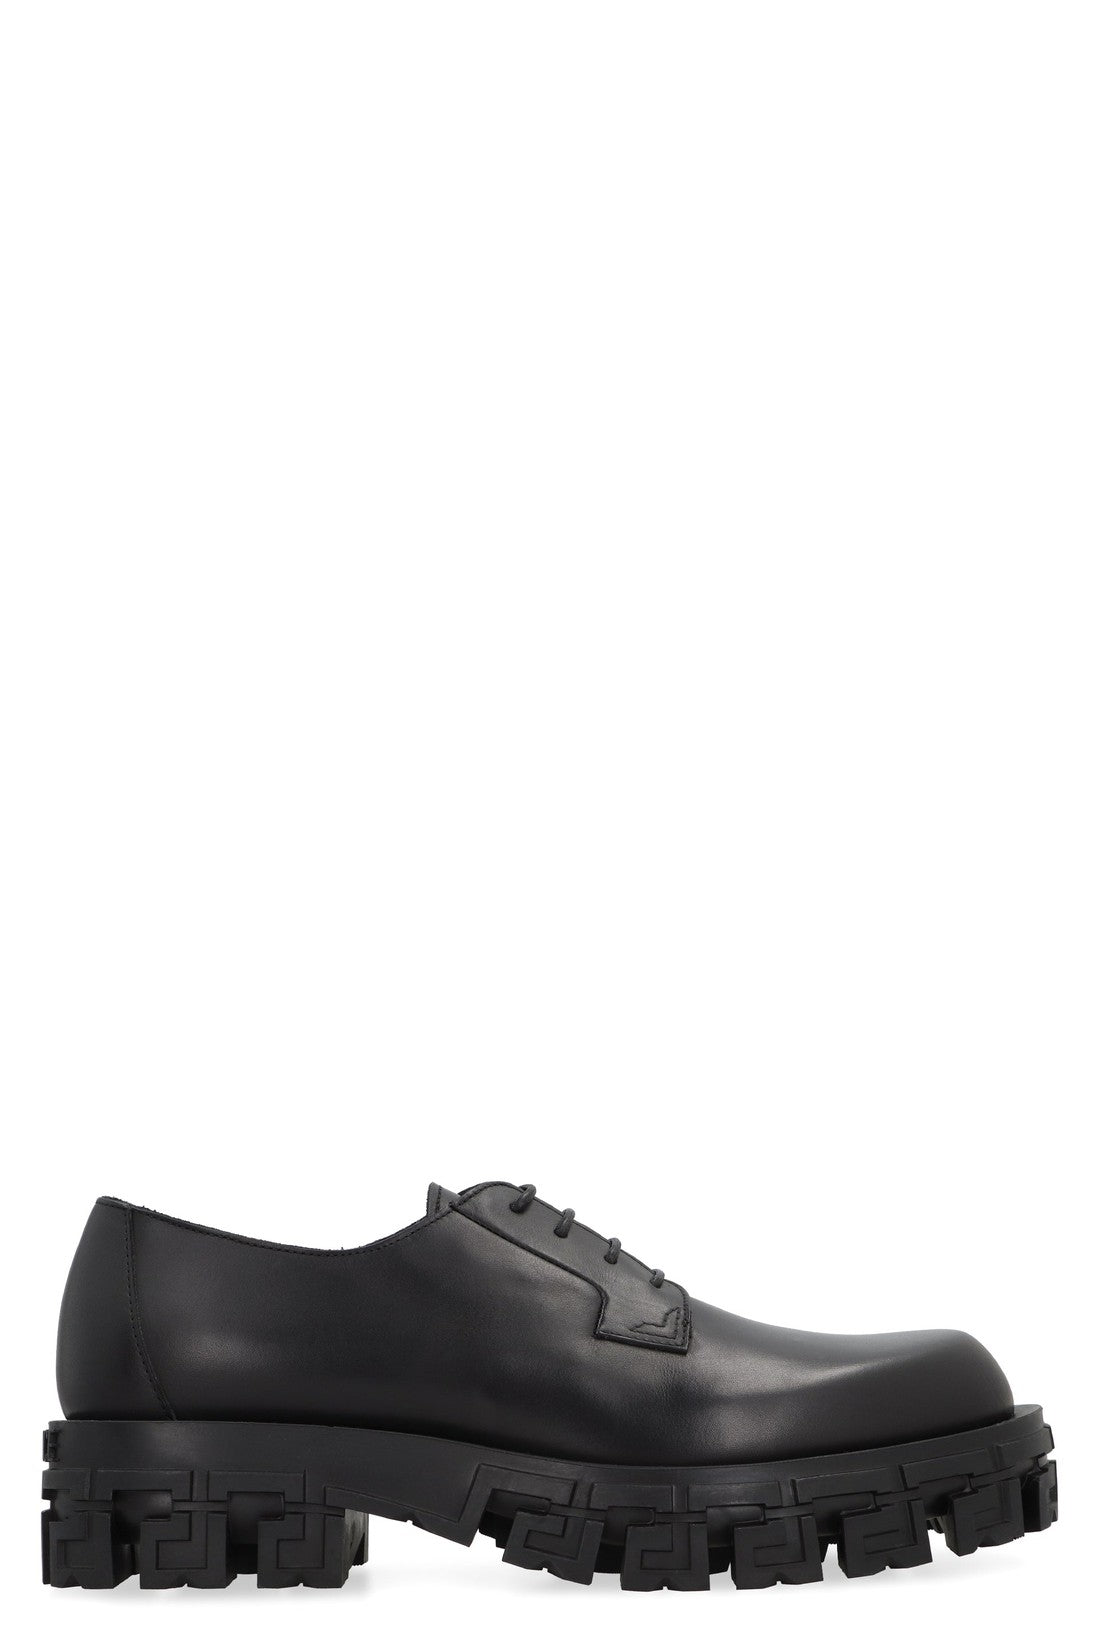 Versace-OUTLET-SALE-Leather lace-up derby shoes-ARCHIVIST